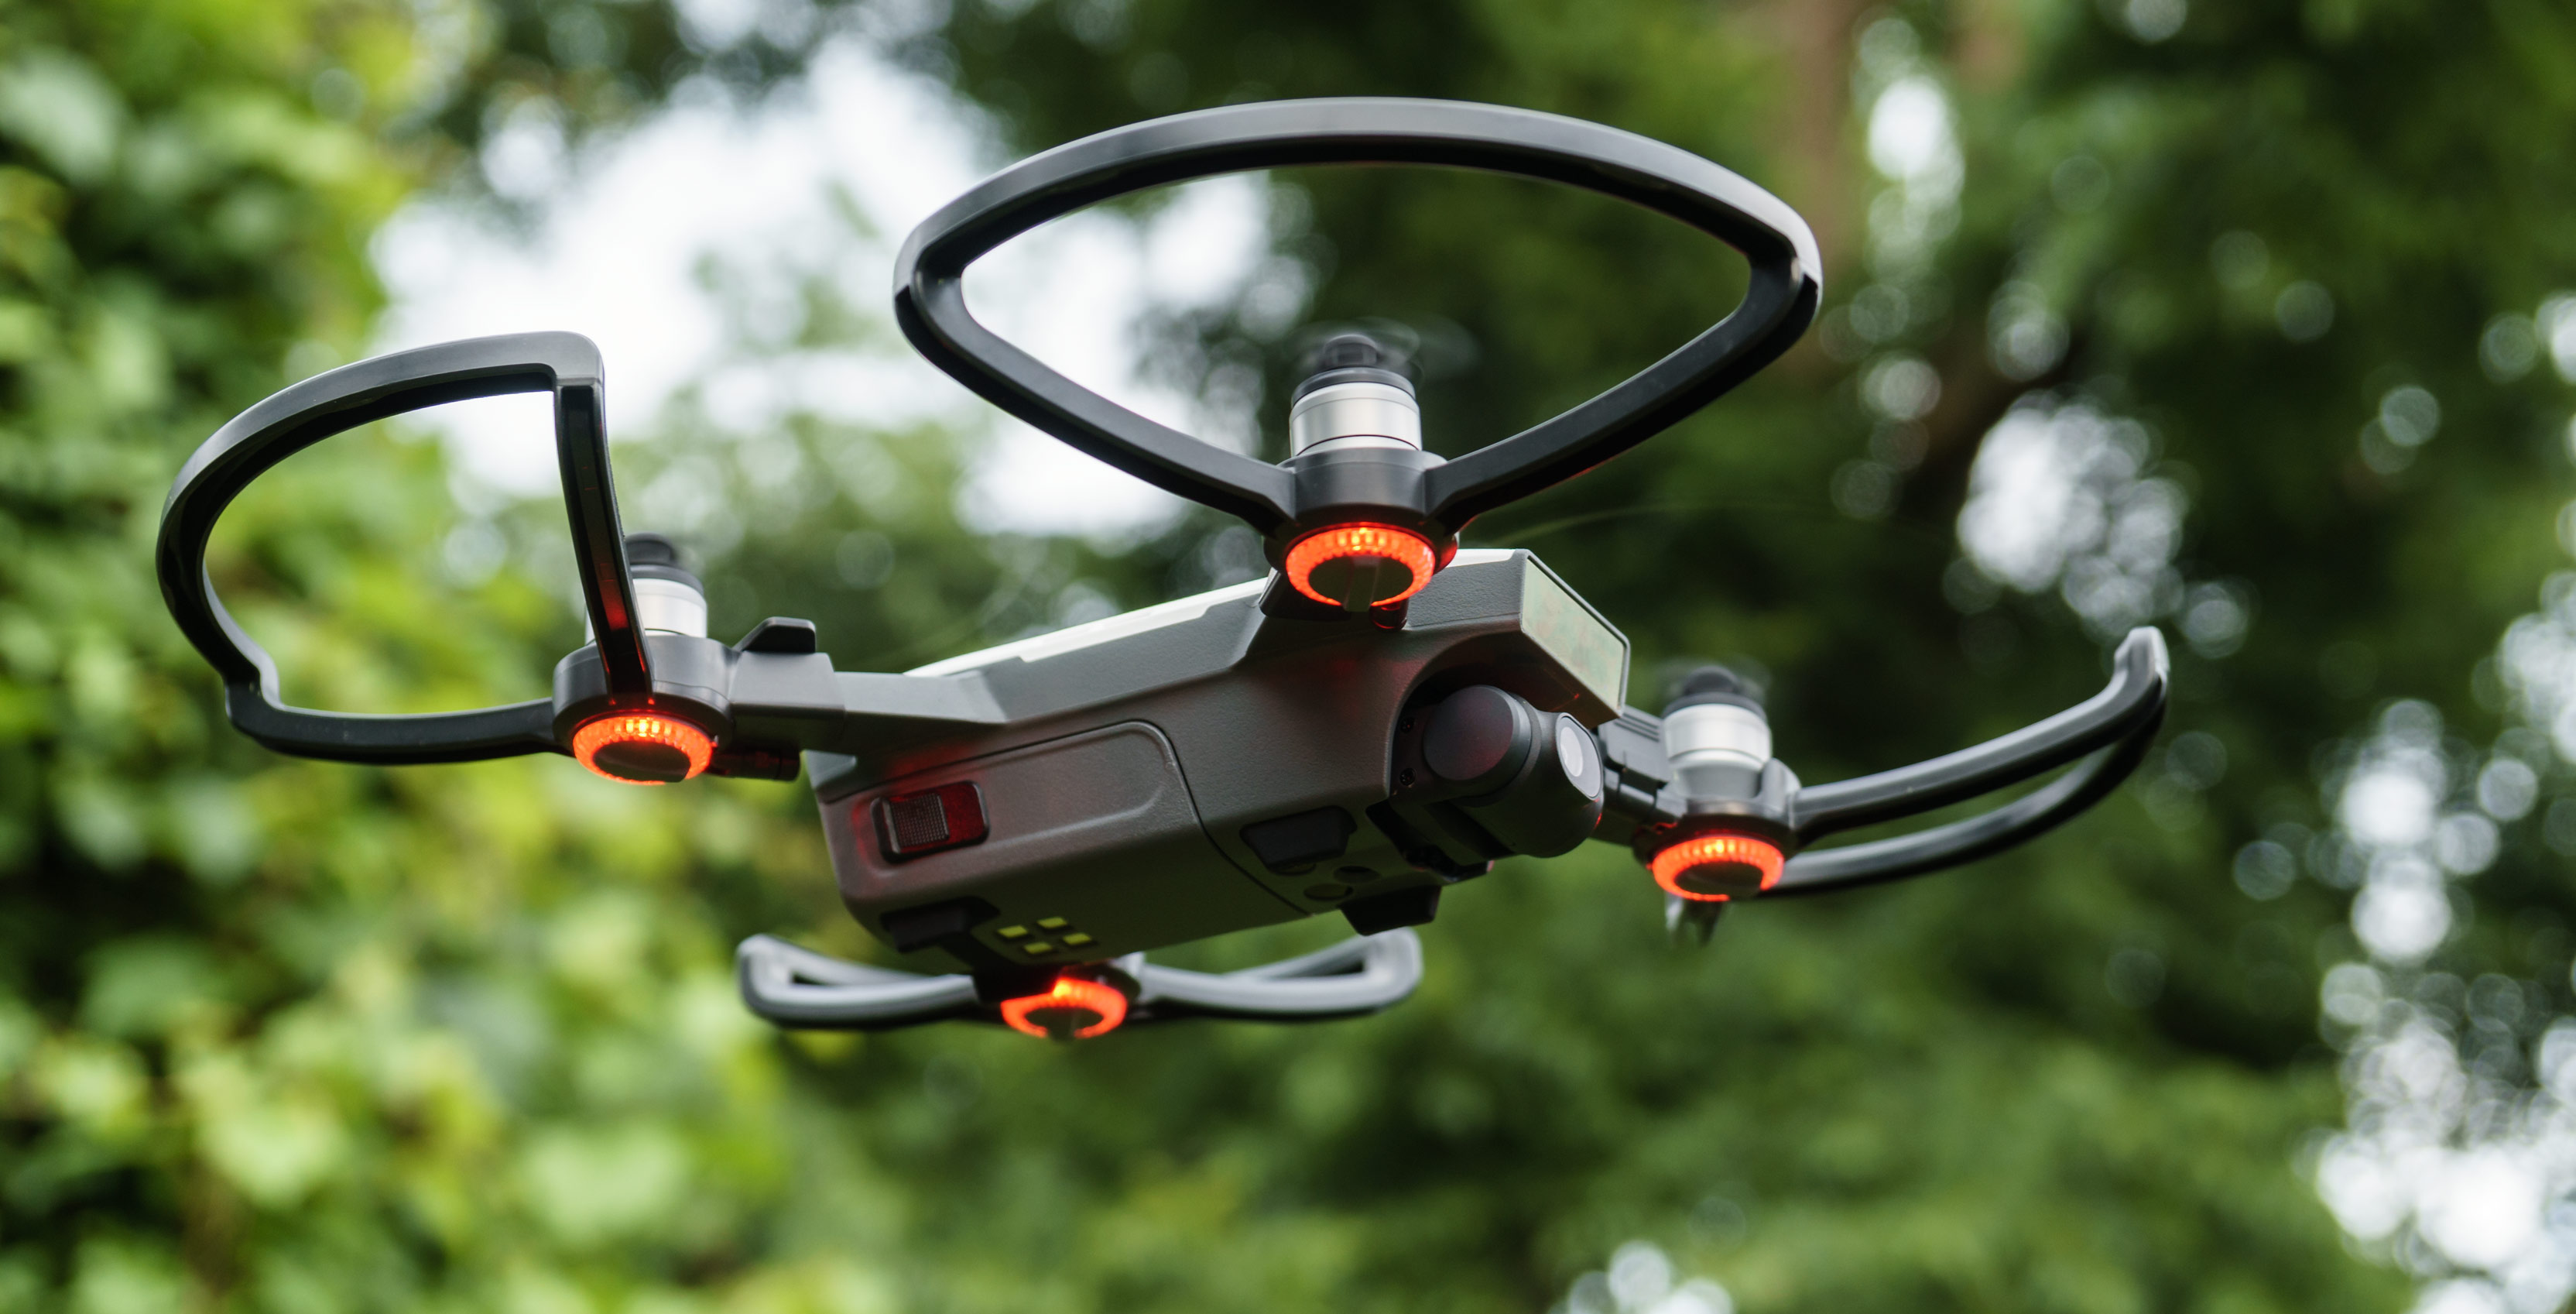 DJI Spark drone in flight